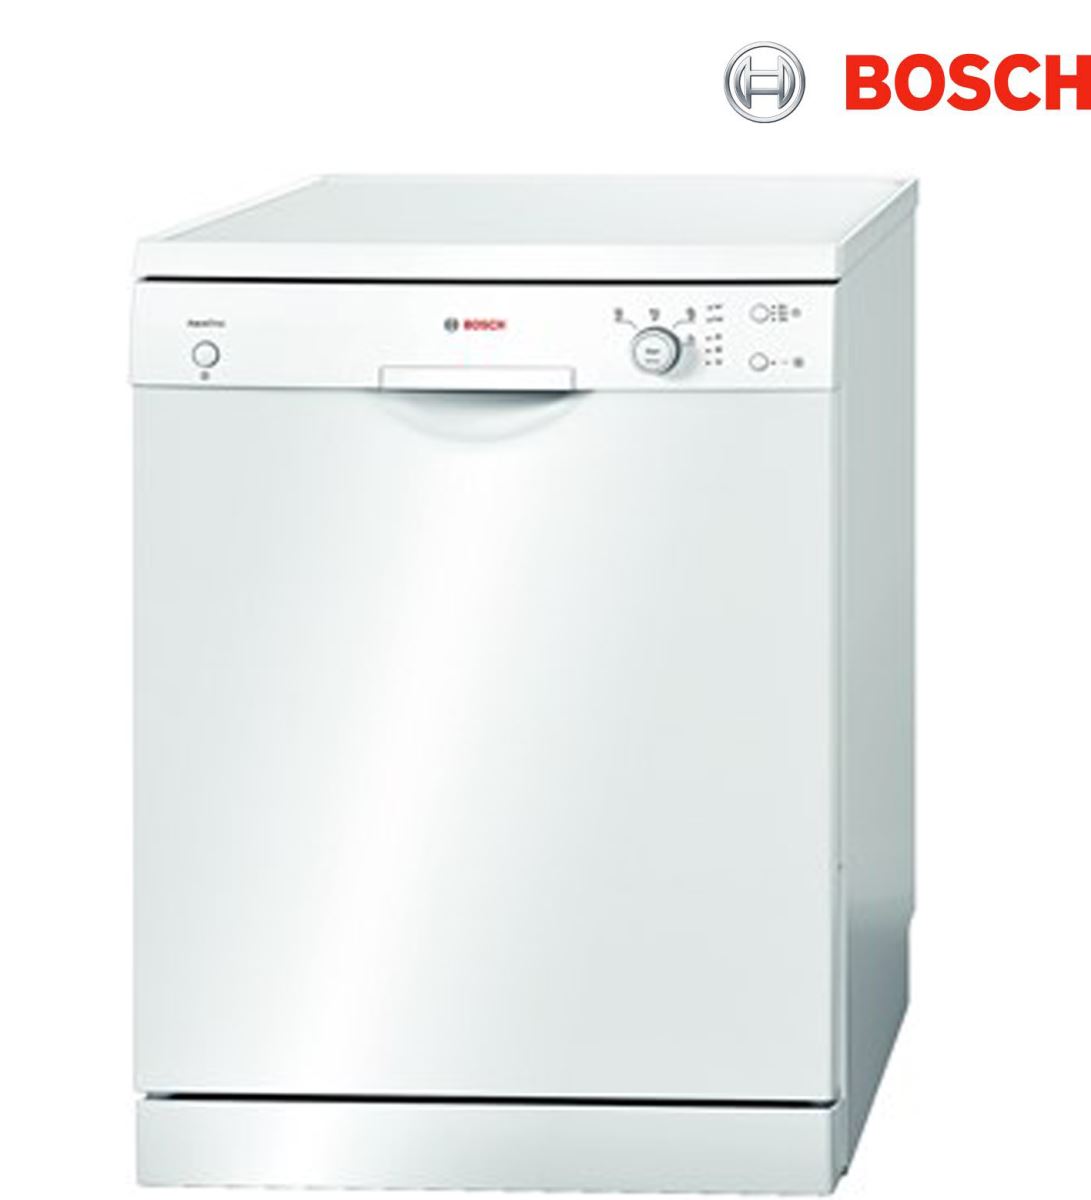 Máy rửa bát Bosch có tốt không? Có nên mua Máy rửa bát Bosch không? aligncenter